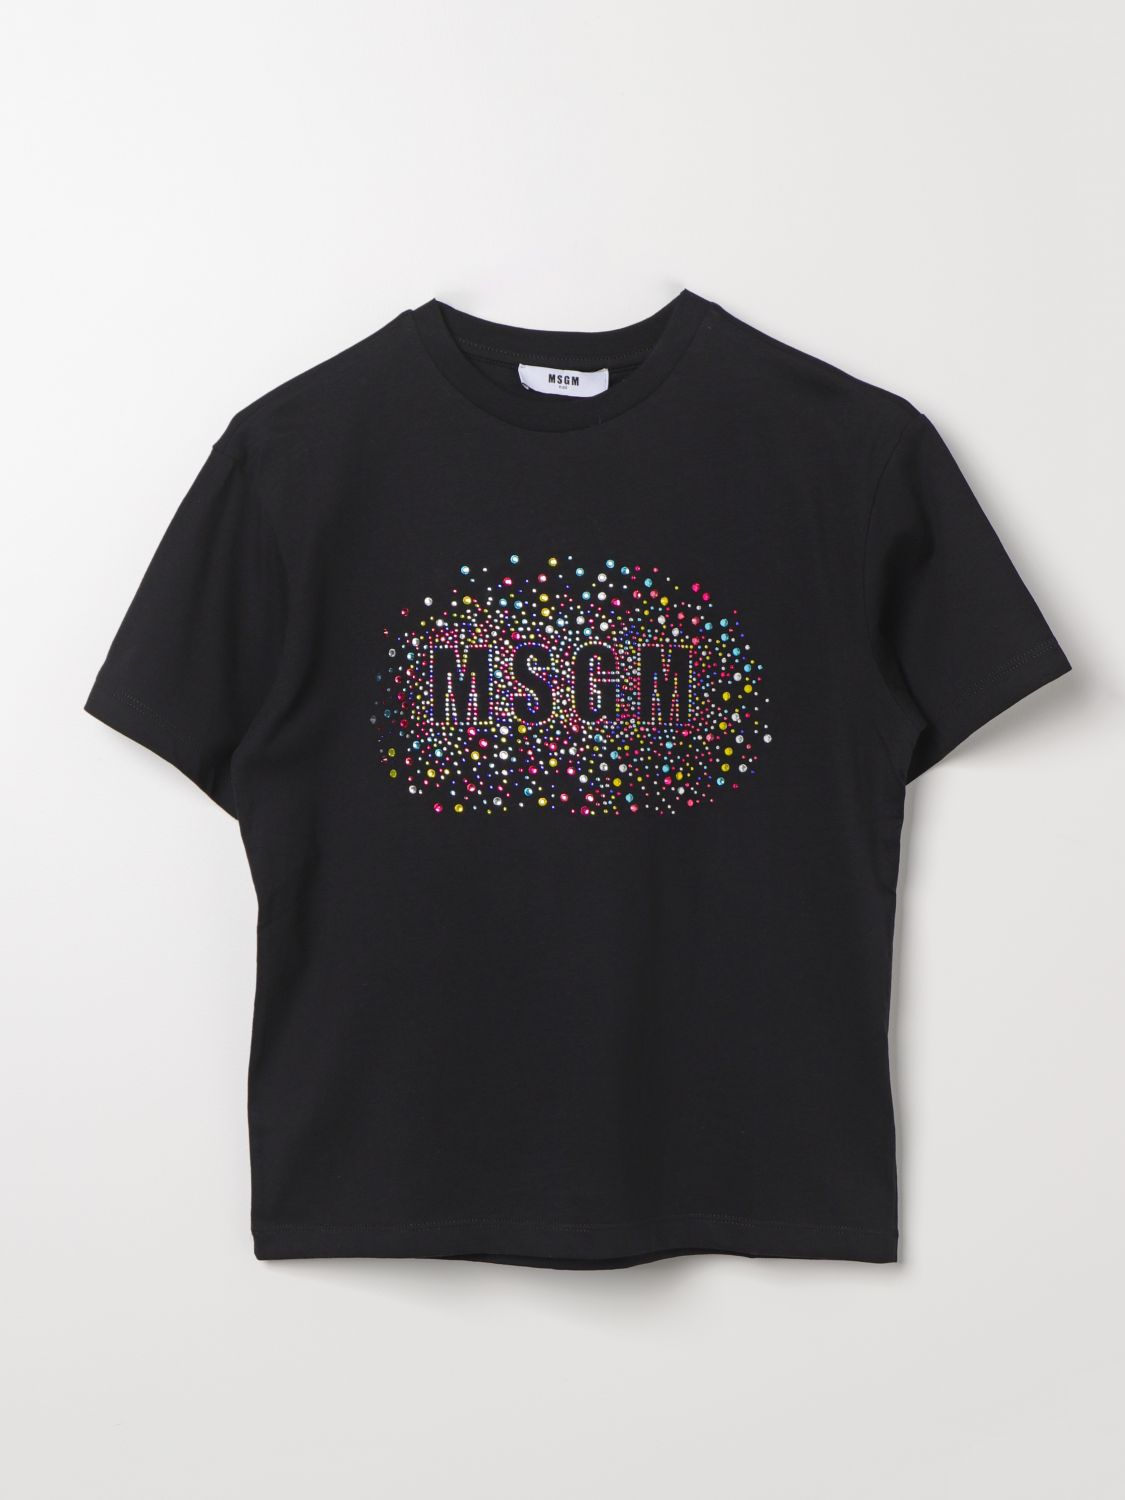 Msgm T-shirt  Kids Kids Colour Black